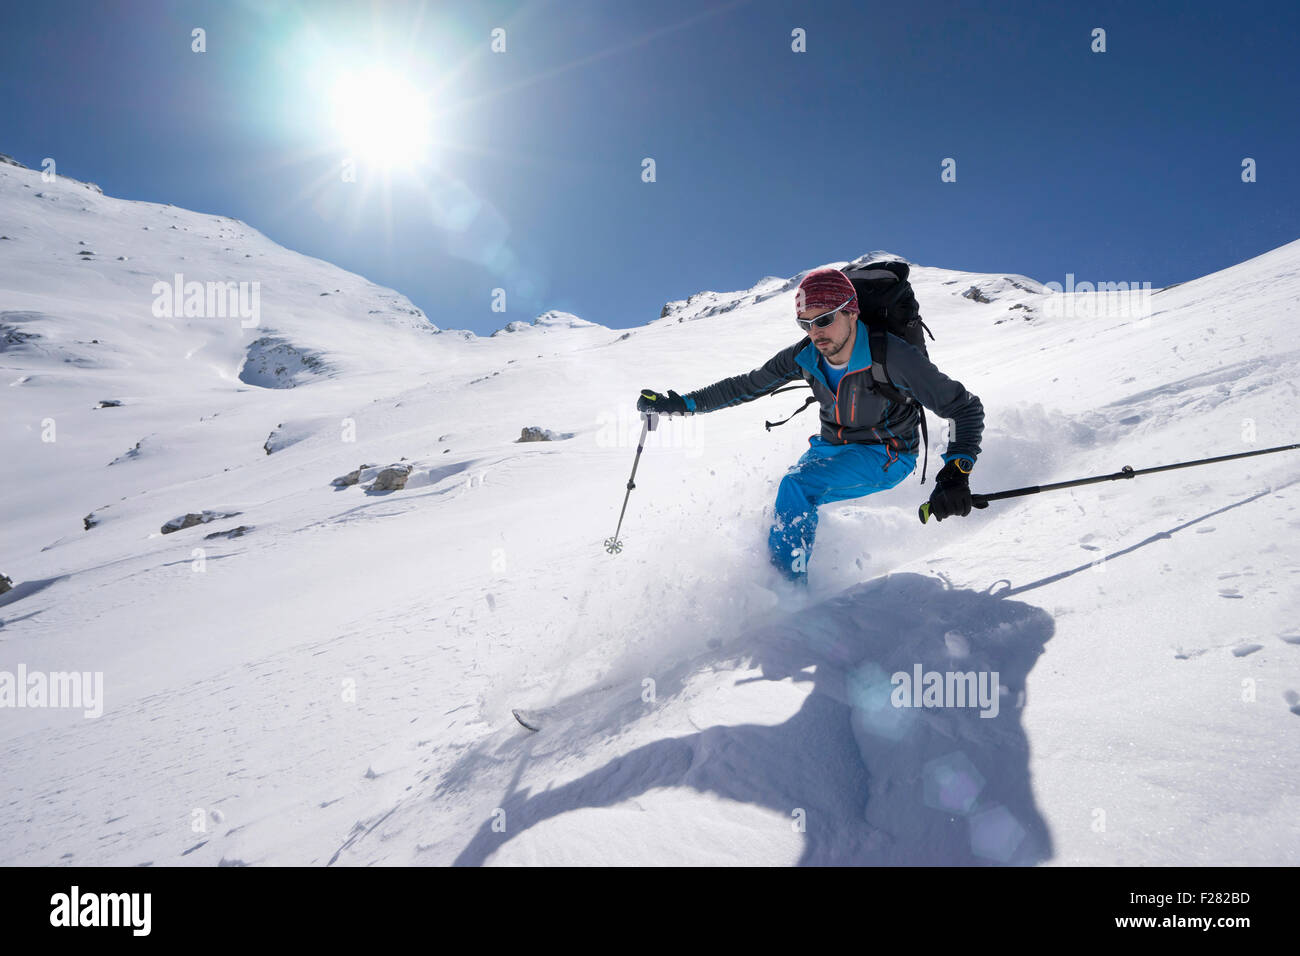 Man skiing, Val Gardena, Trentino-Alto Adige, Italy Stock Photo